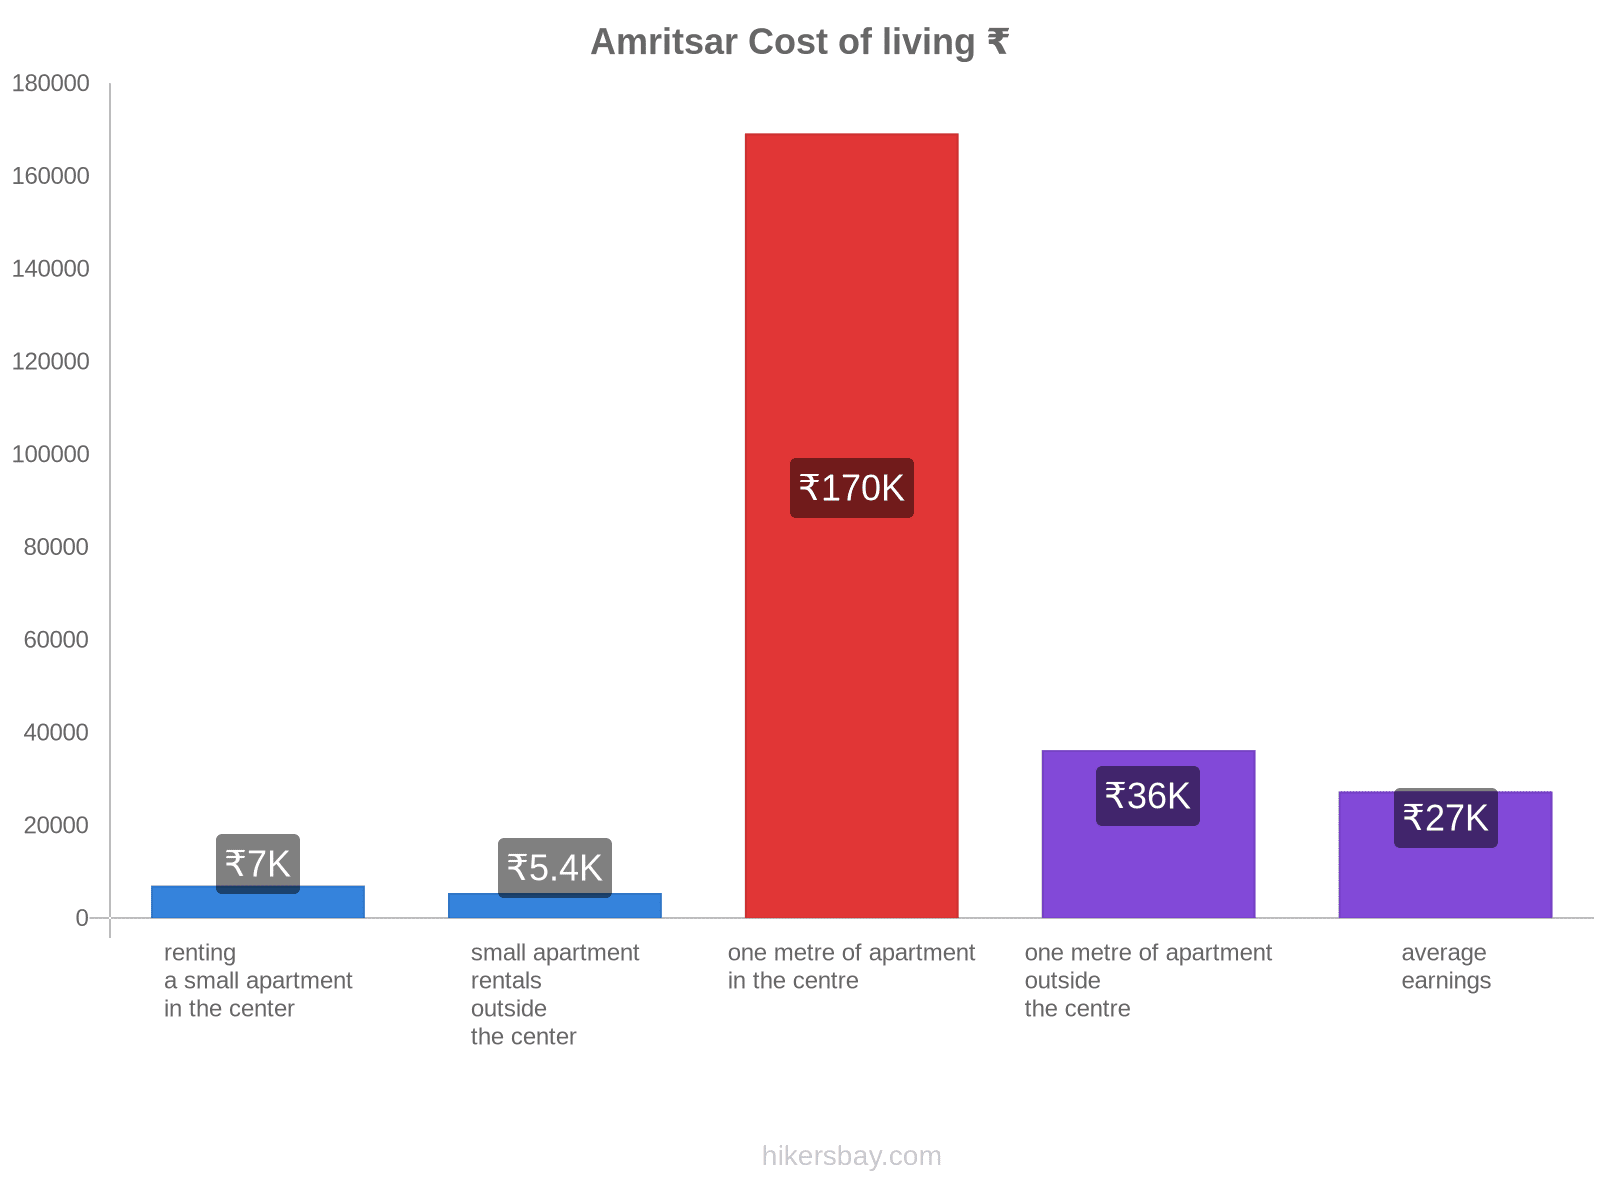 Amritsar cost of living hikersbay.com